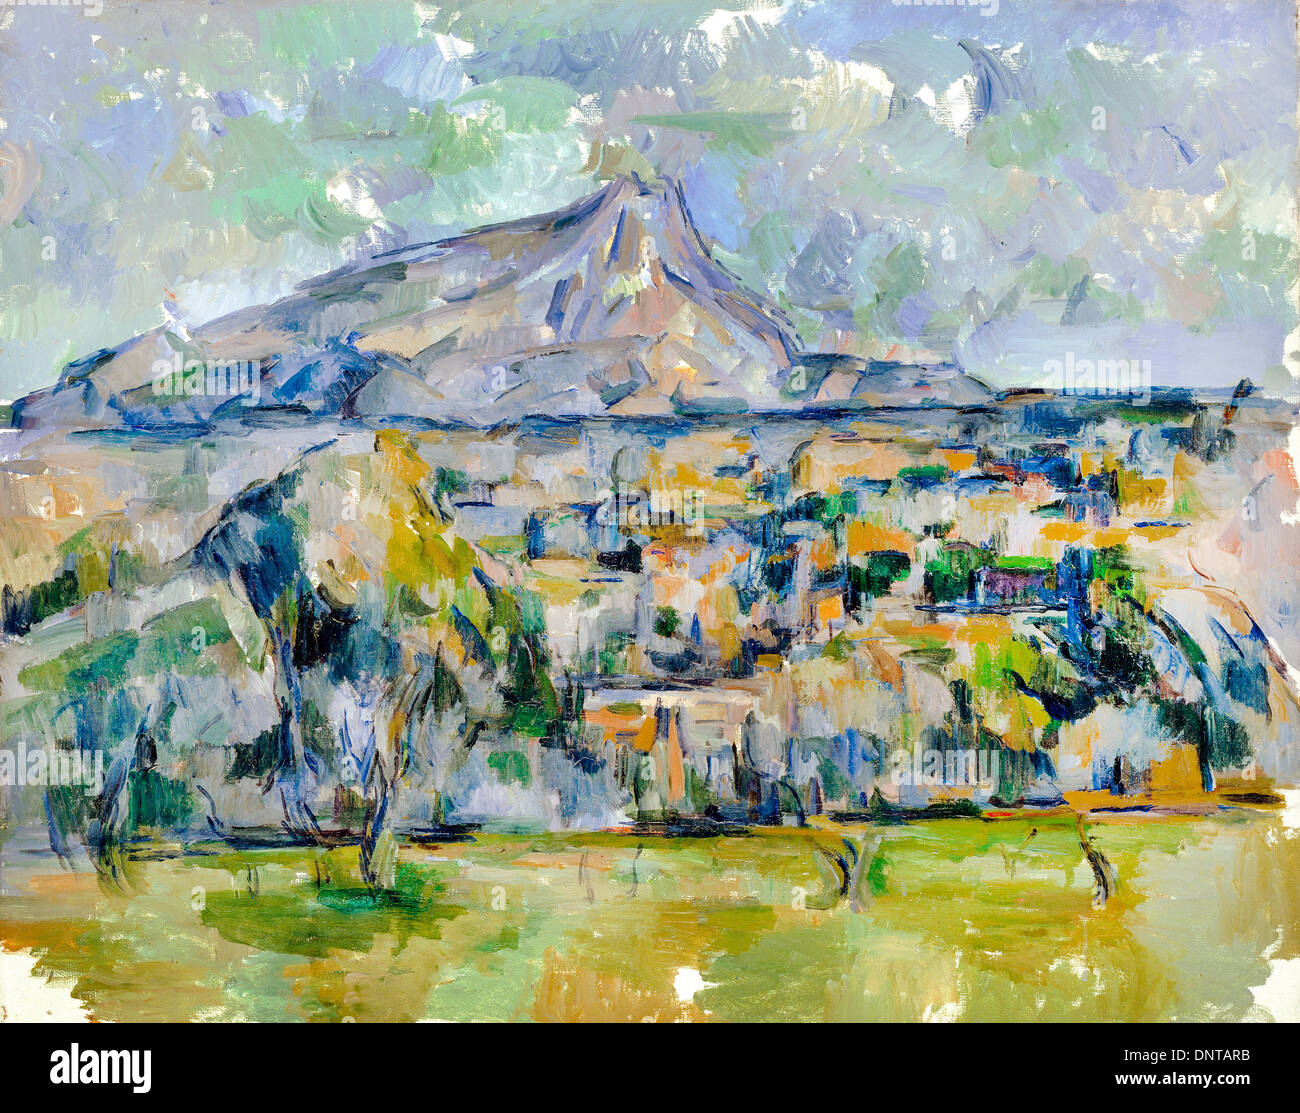 Paul Cezanne, Mont Sainte-Victoire 1902 - 1906 huile sur toile. Nelson-Atkins Museum of Art, Kansas City, Missouri, États-Unis. Banque D'Images